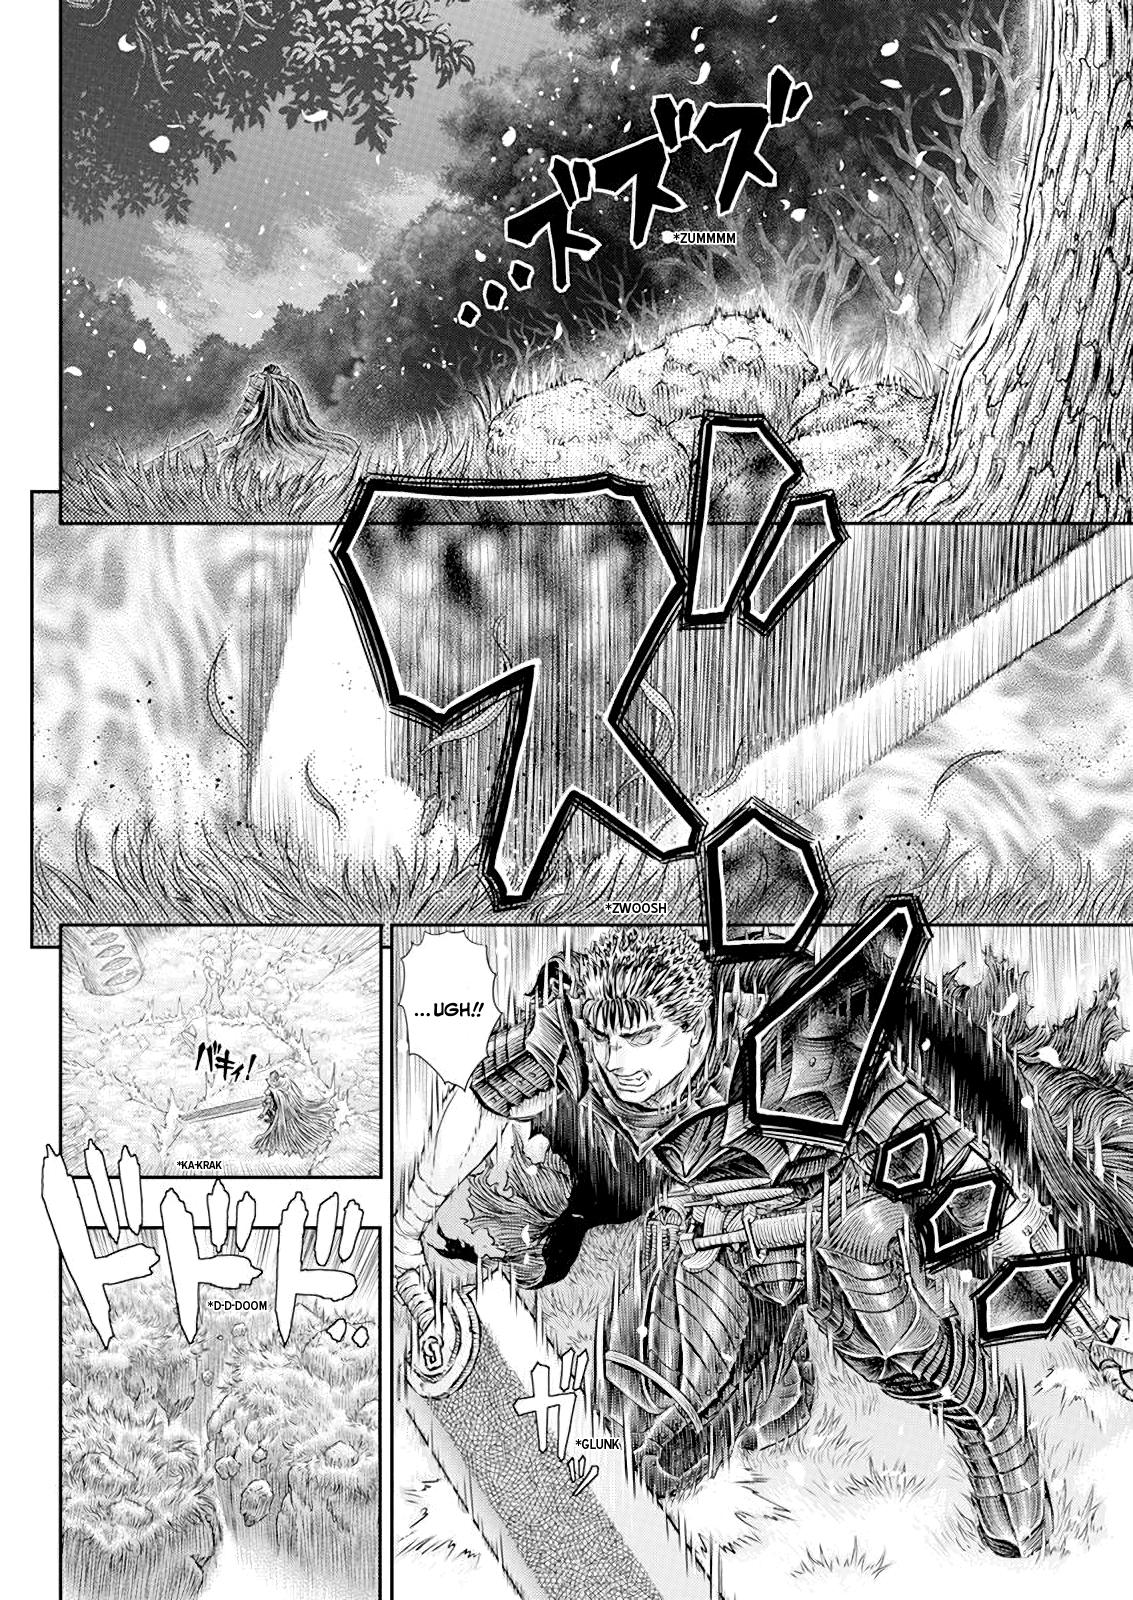 Berserk Manga Chapter 367 image 12